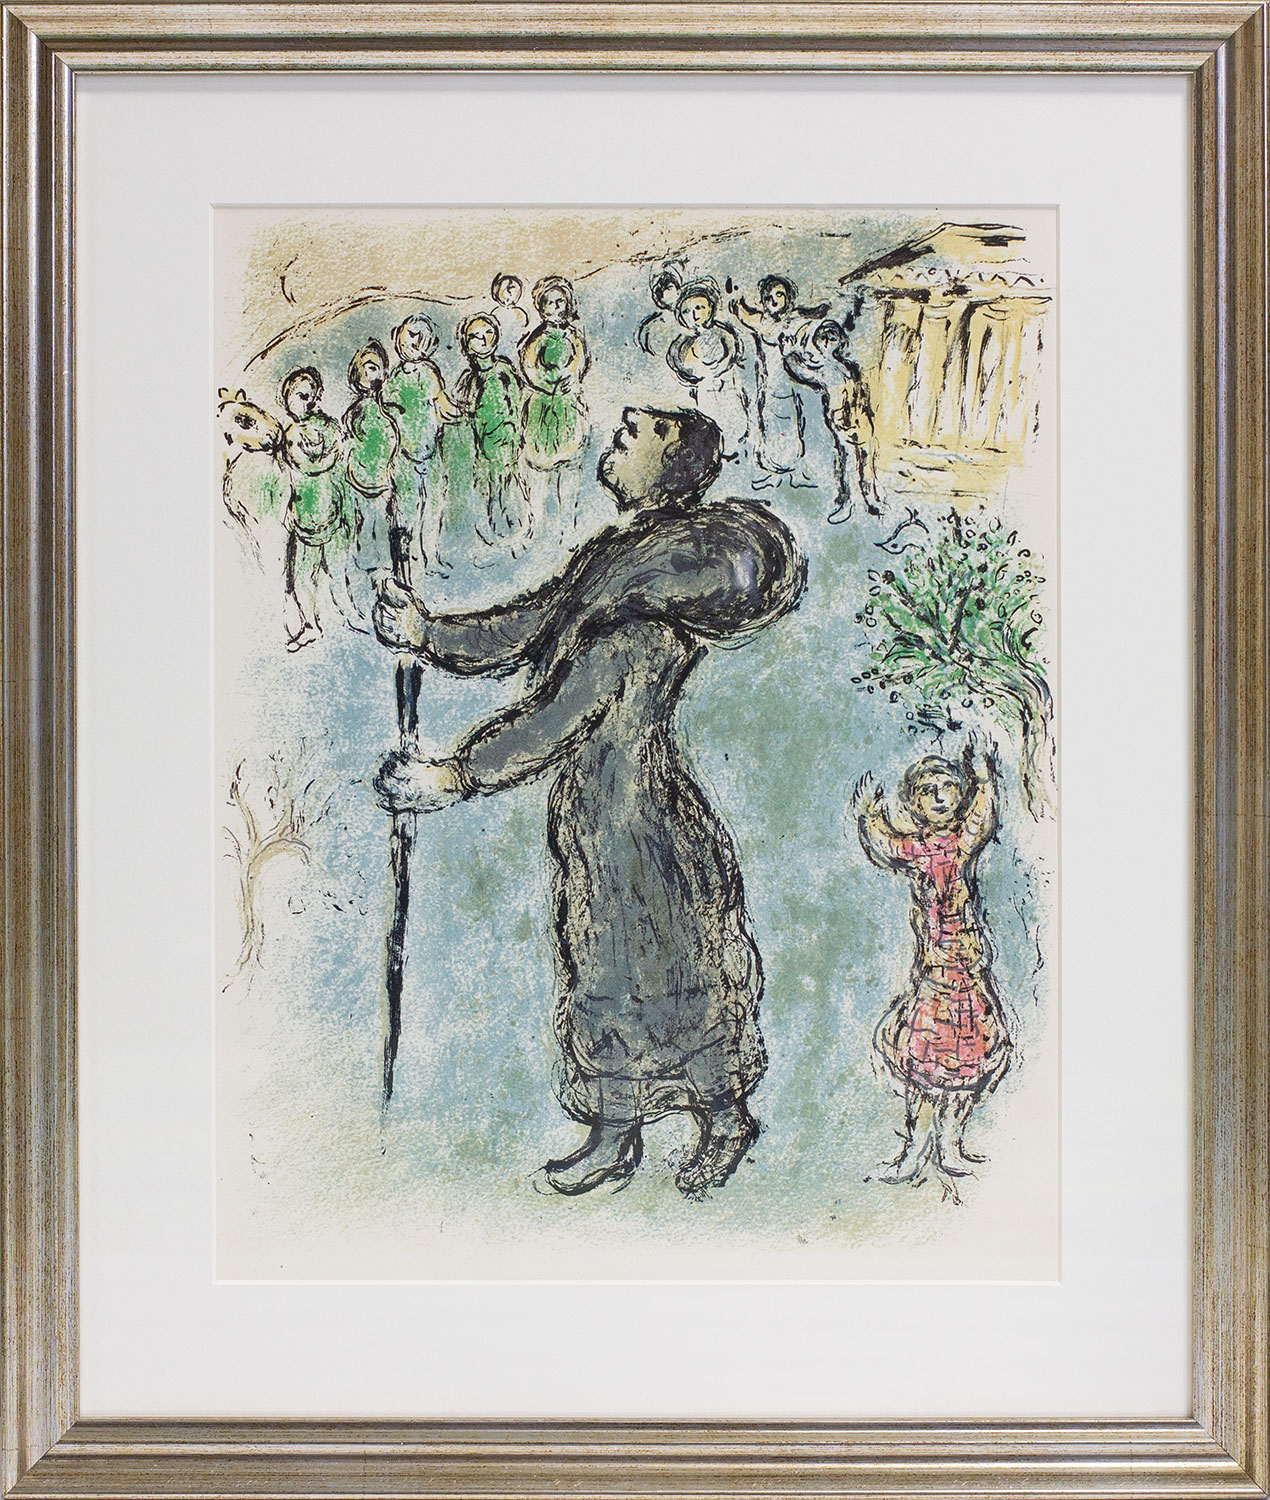 Bild "Die Odyssee - Odysseus als Bettler verkleidet" (1989), gerahmt von Marc Chagall